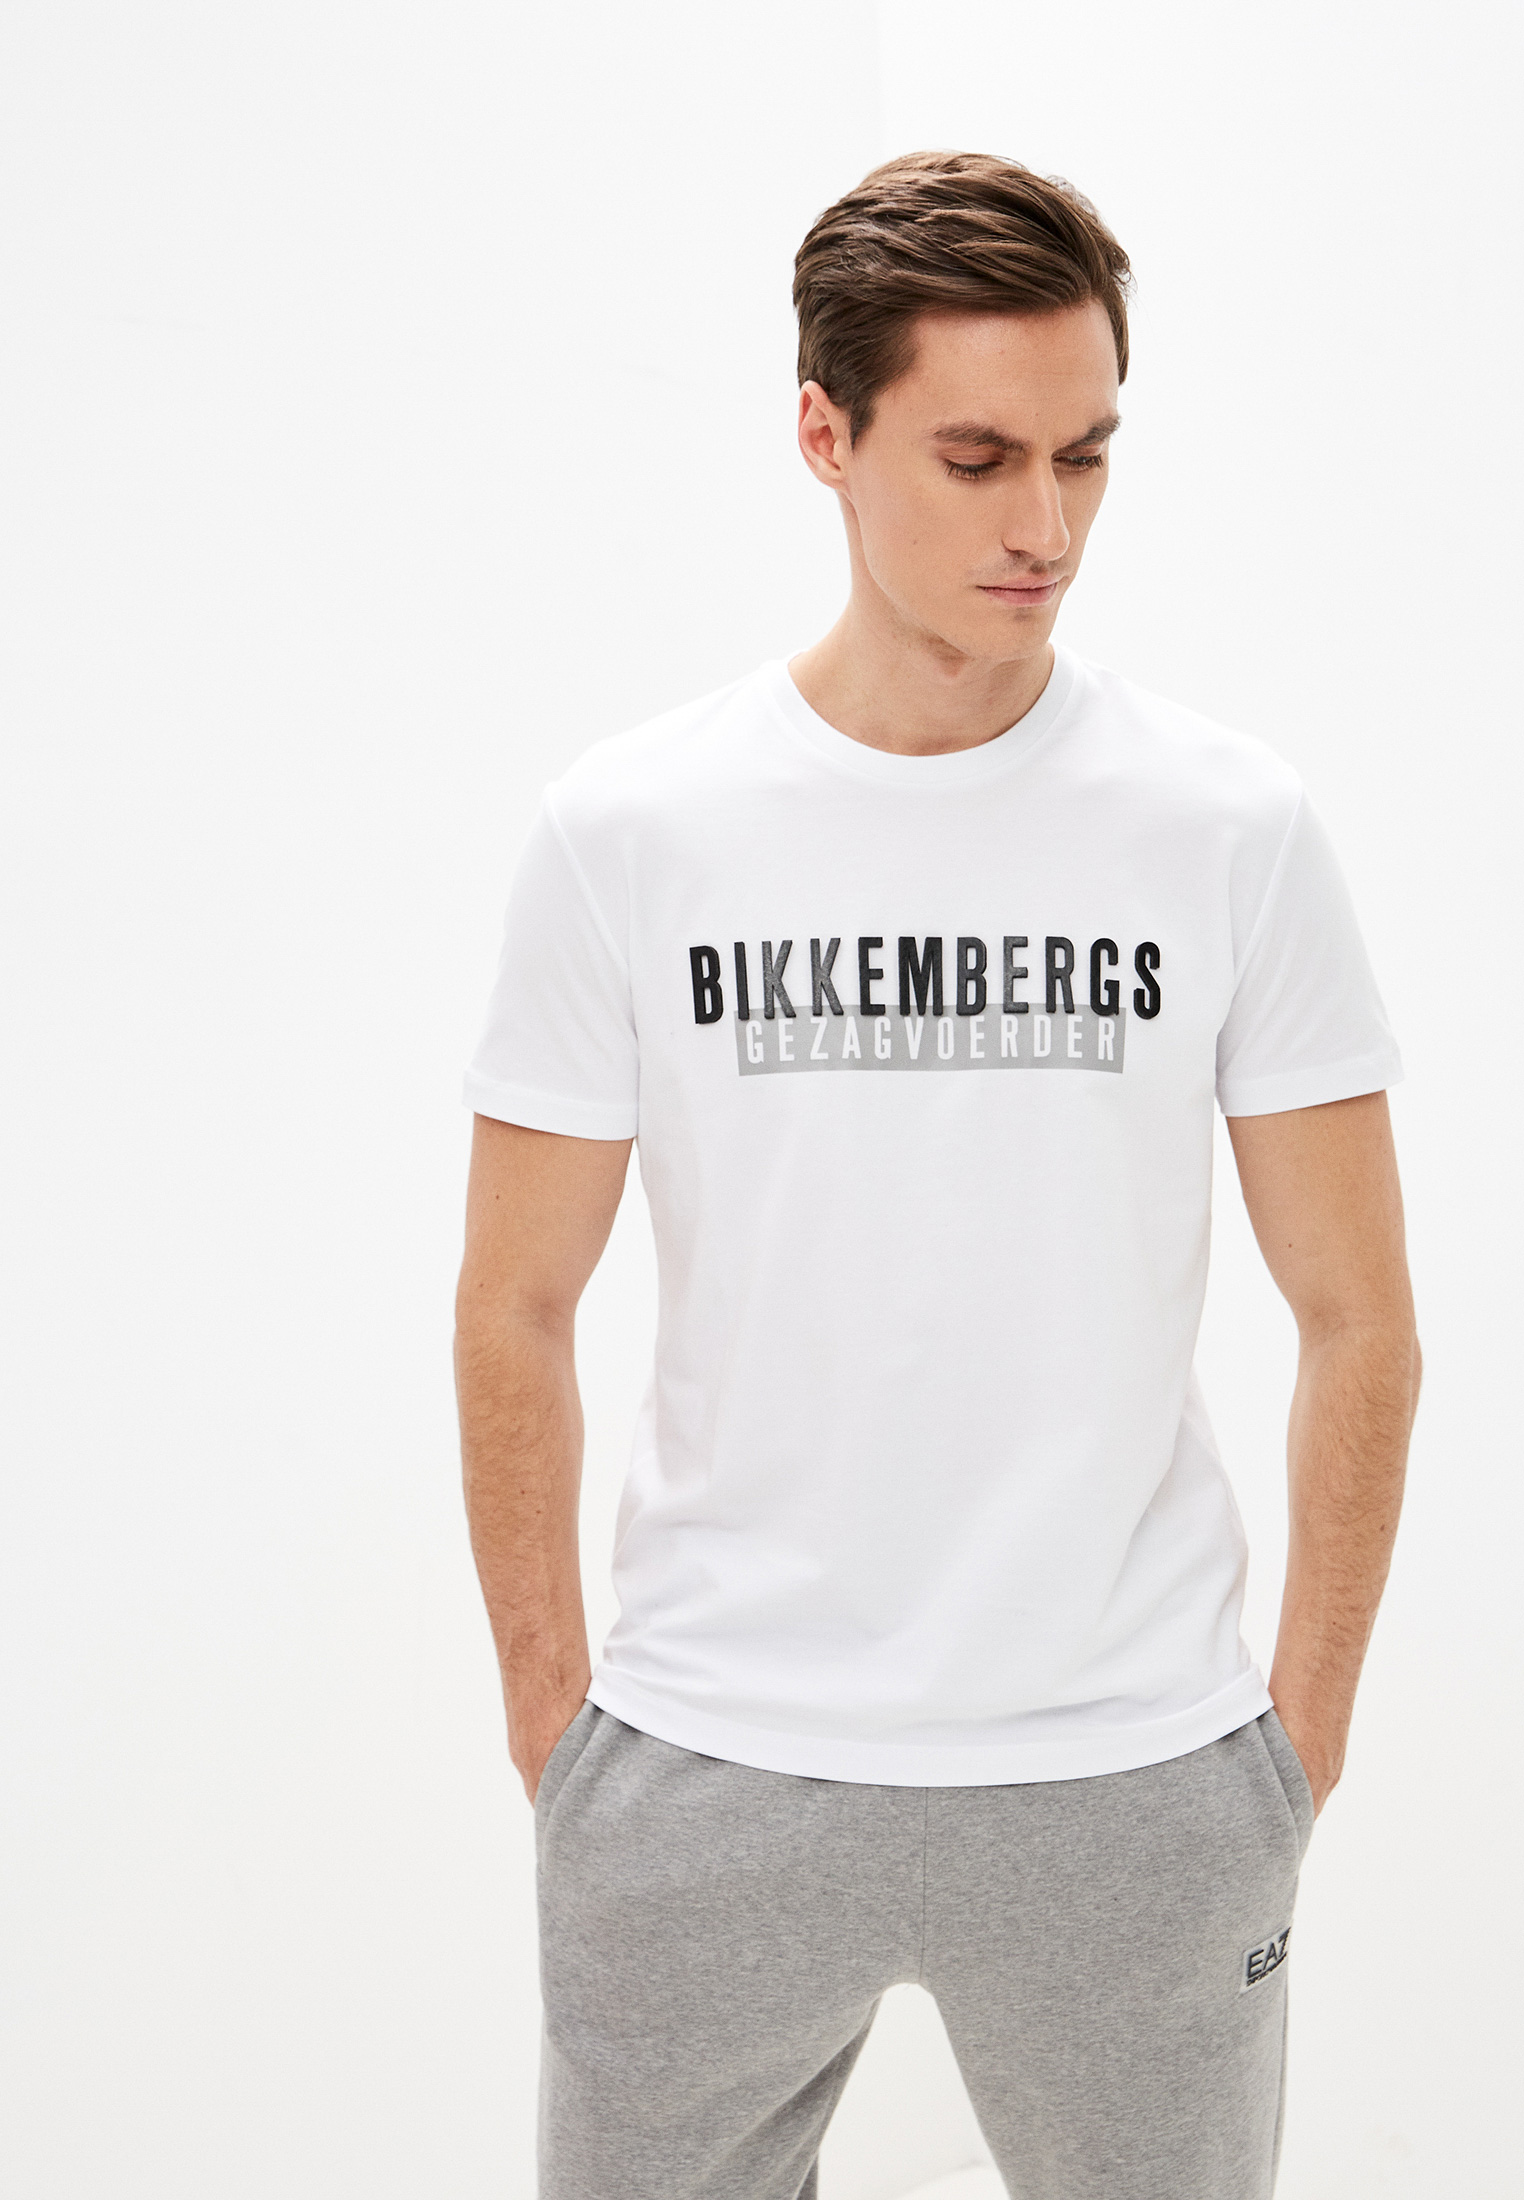 Мужская футболка Bikkembergs (Биккембергс) C 7 001 34 E 1814: изображение 1